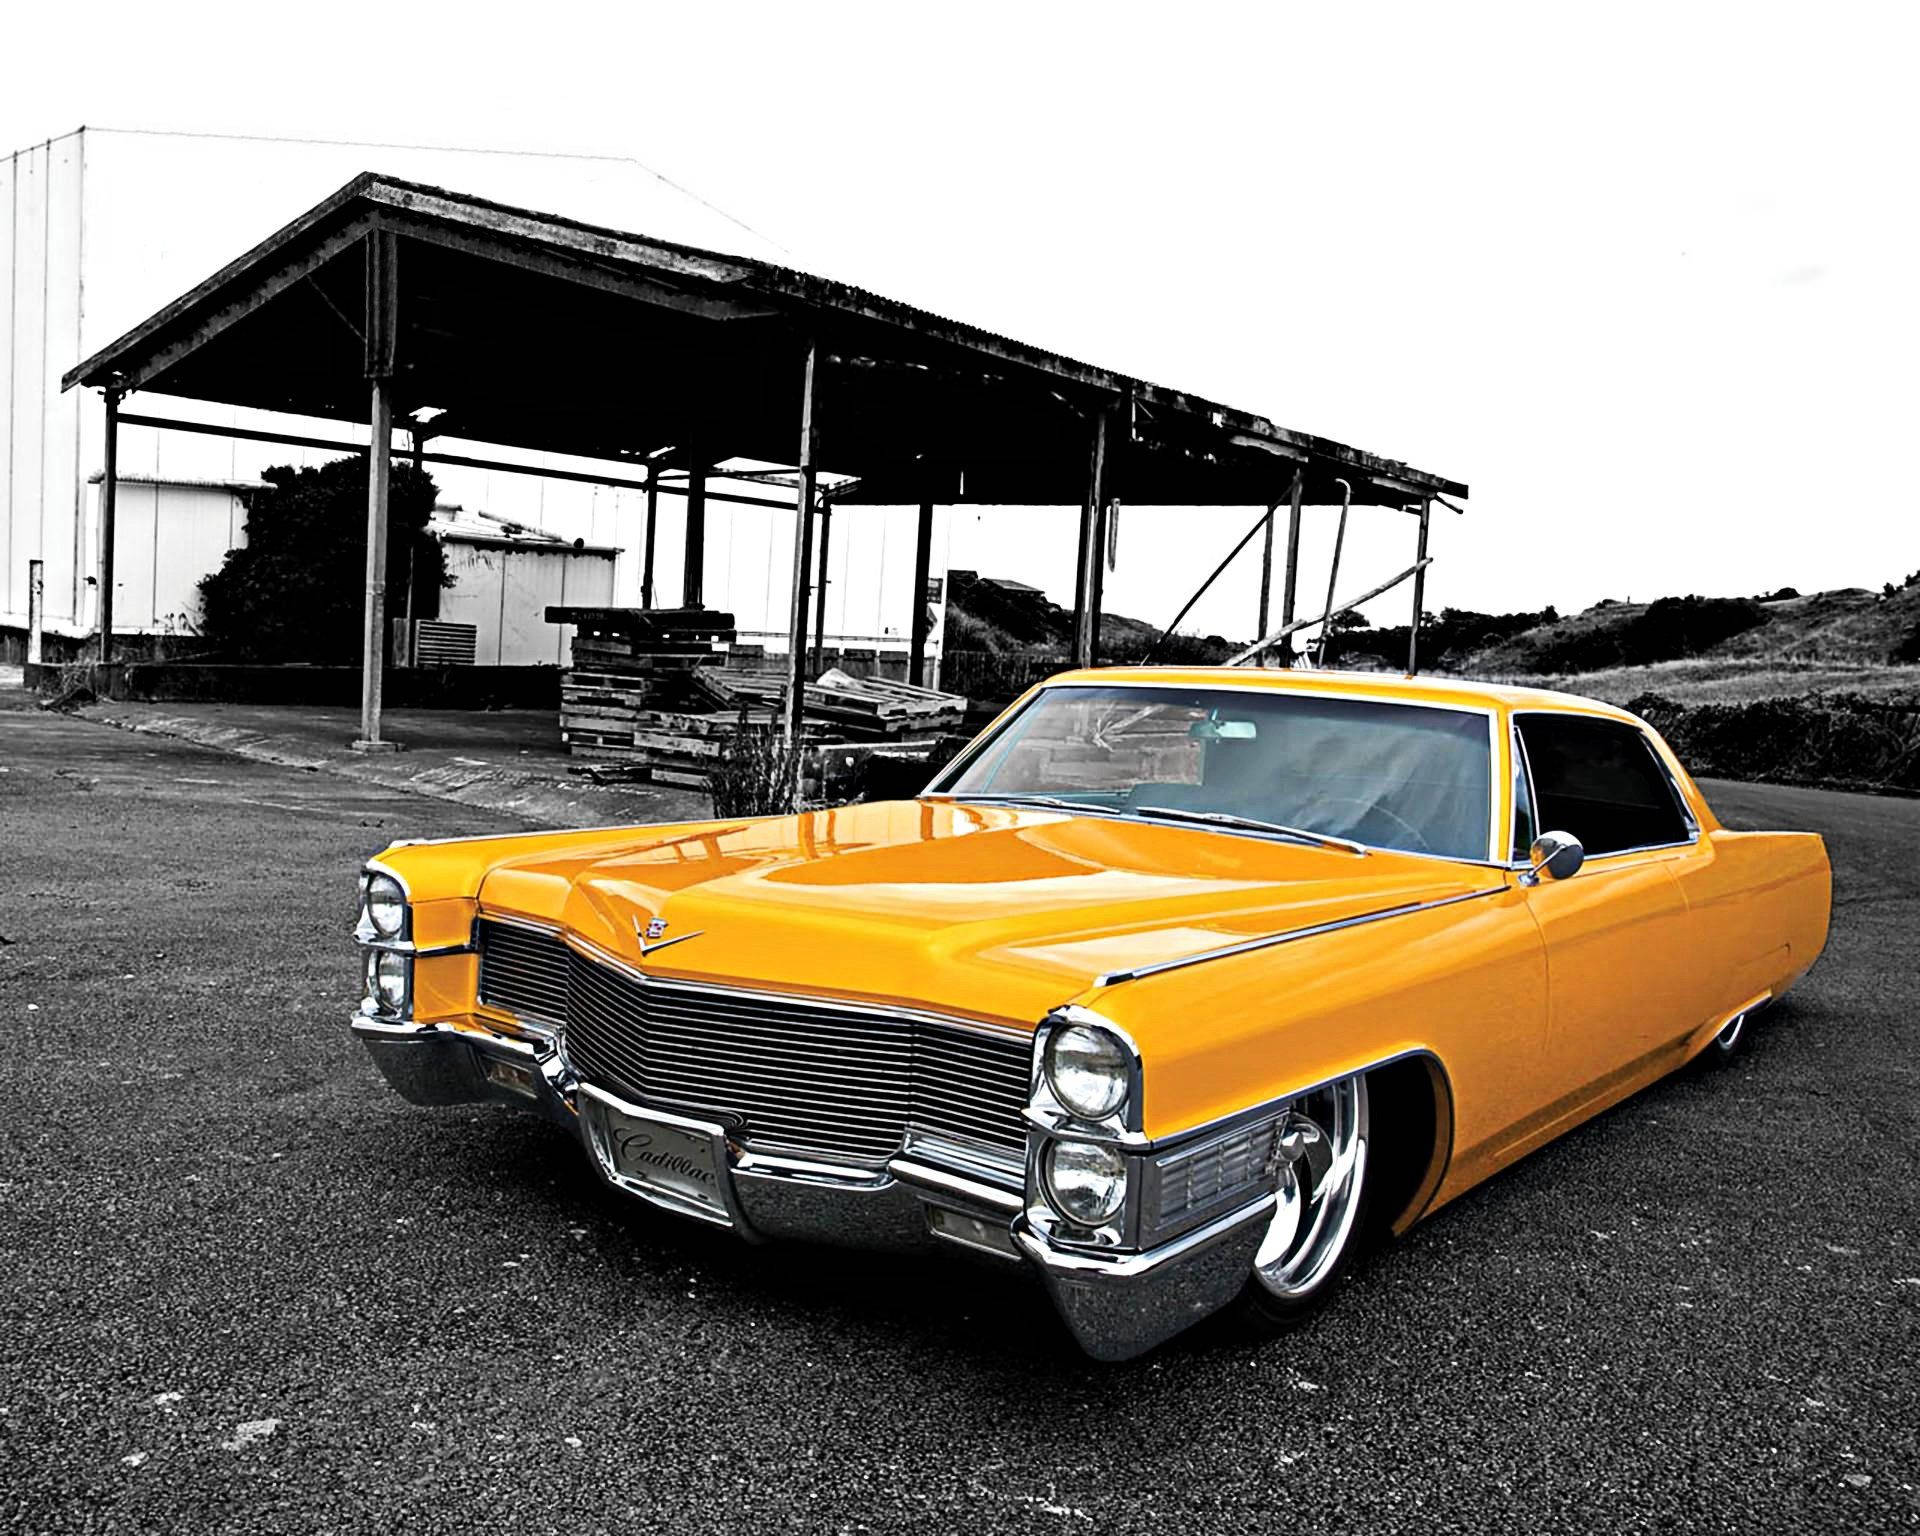 Yellow Vintage Cadillac Wallpaper